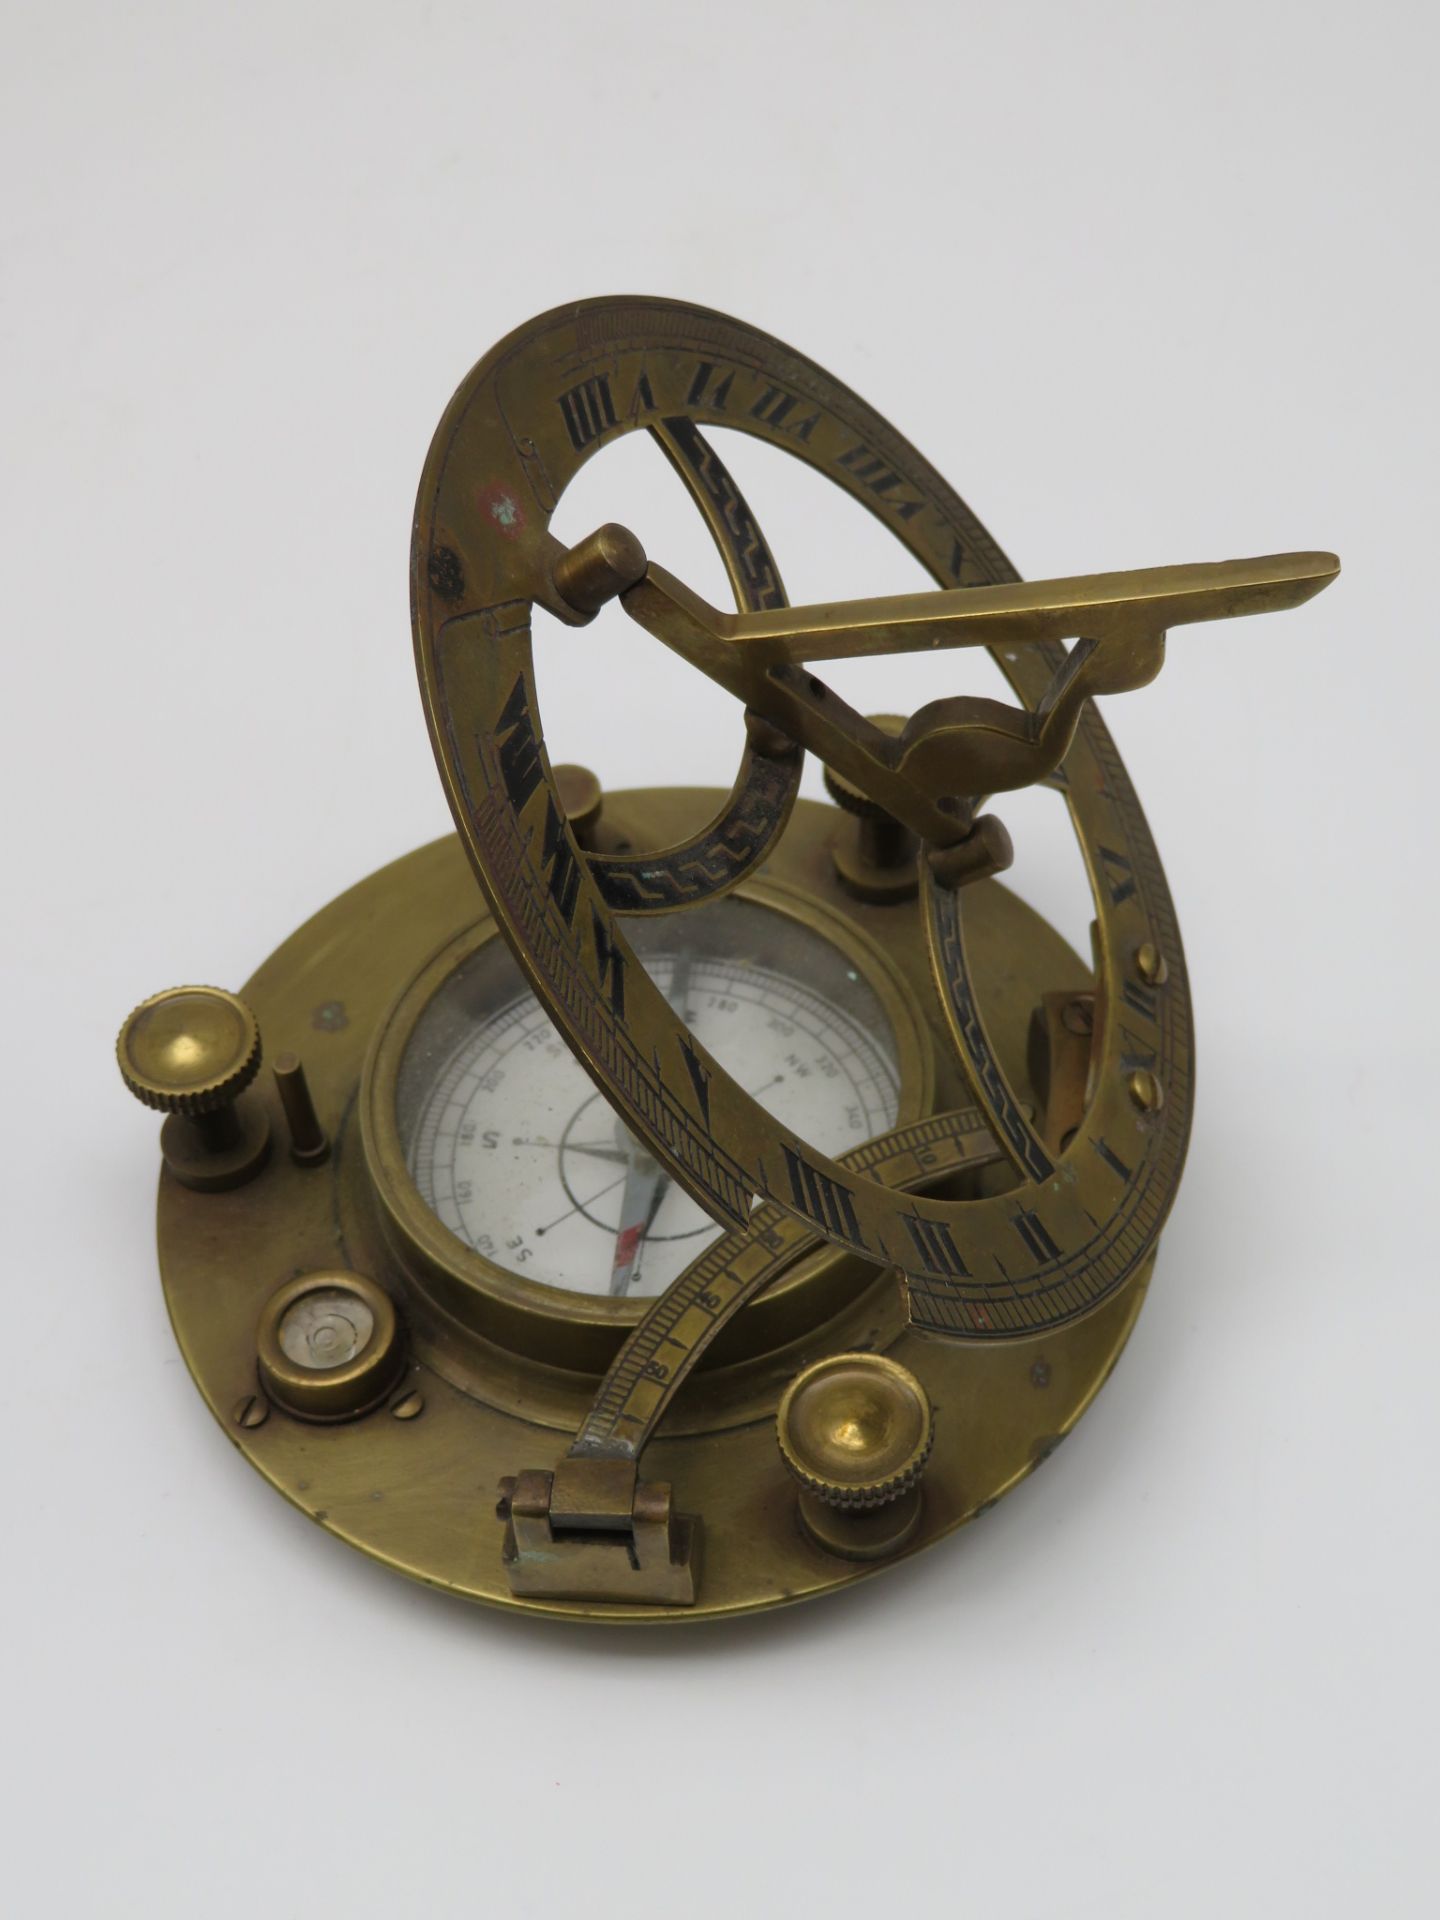 Kompass mit Sonnenuhr, 1. Hälfte 20. Jahrhundert, Messing, h 3 cm, d 11,5 cm.